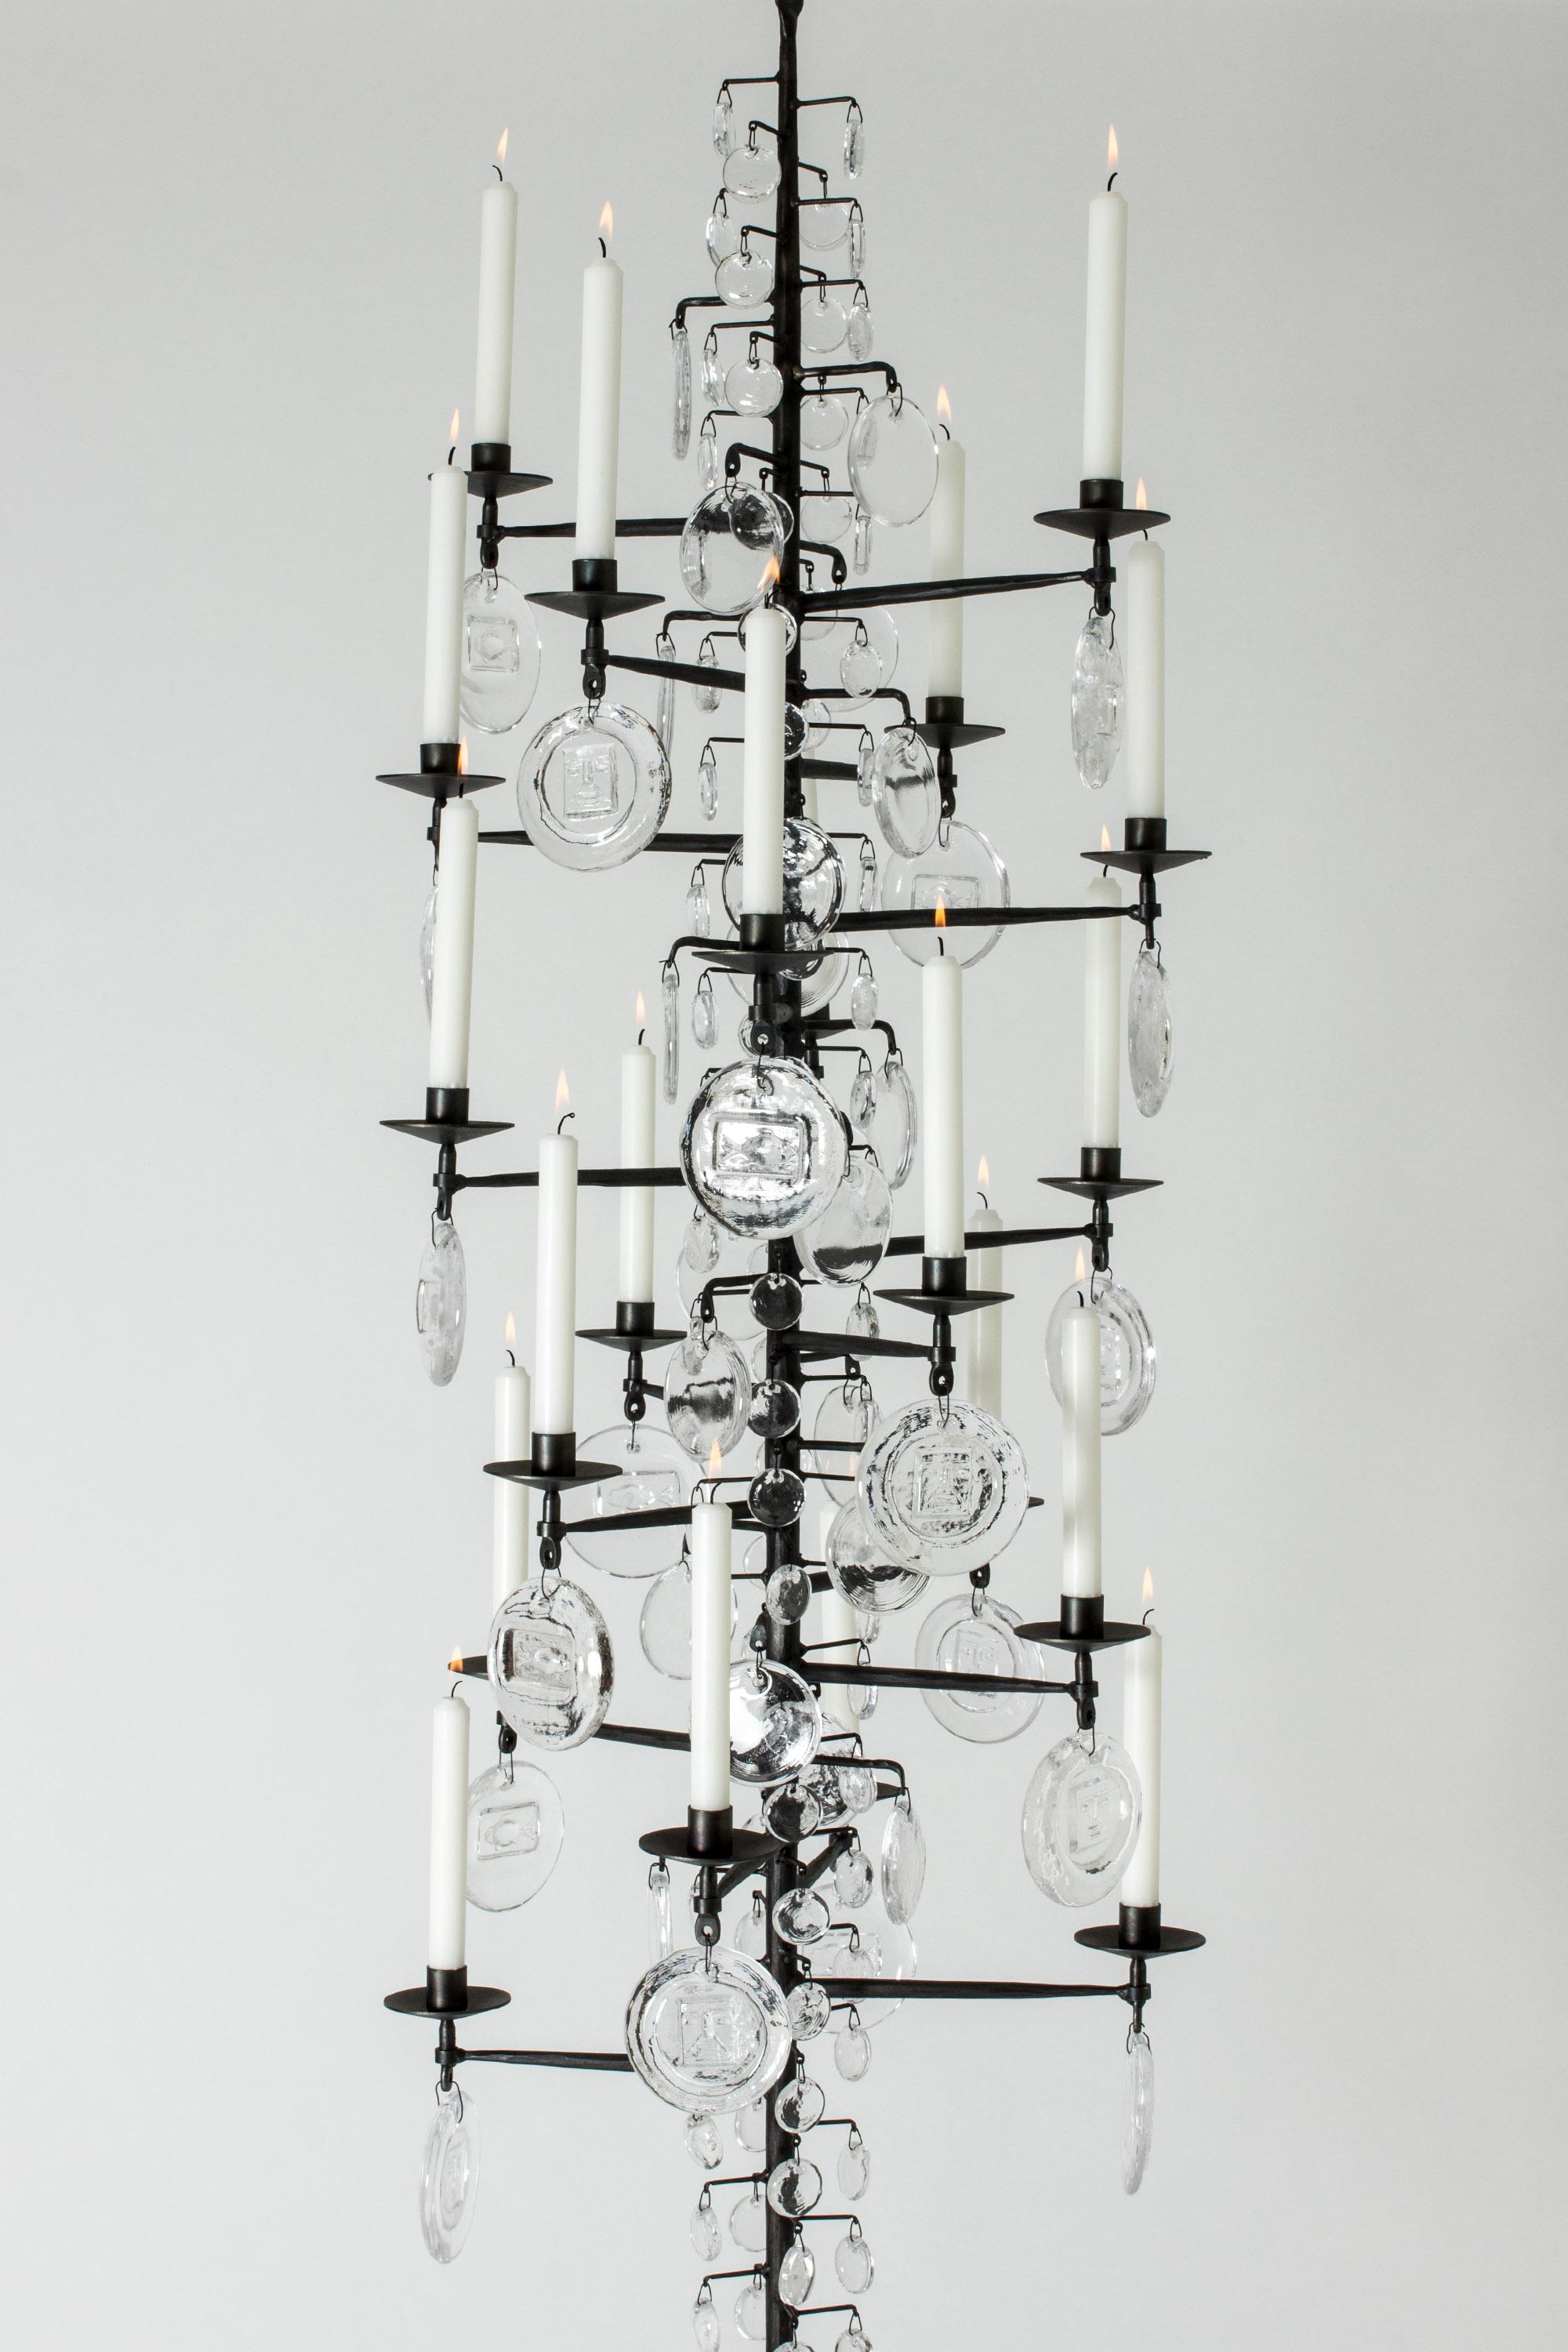 Atemberaubender, übergroßer Kerzenleuchter von Erik Höglund, hergestellt aus Schmiedeeisen und Glas. Der lange, rustikale Eisenrahmen ist mit verschieden großen Glasmedaillons verziert, die wie große Regentropfen auf einem kahlen Baum aussehen. Die